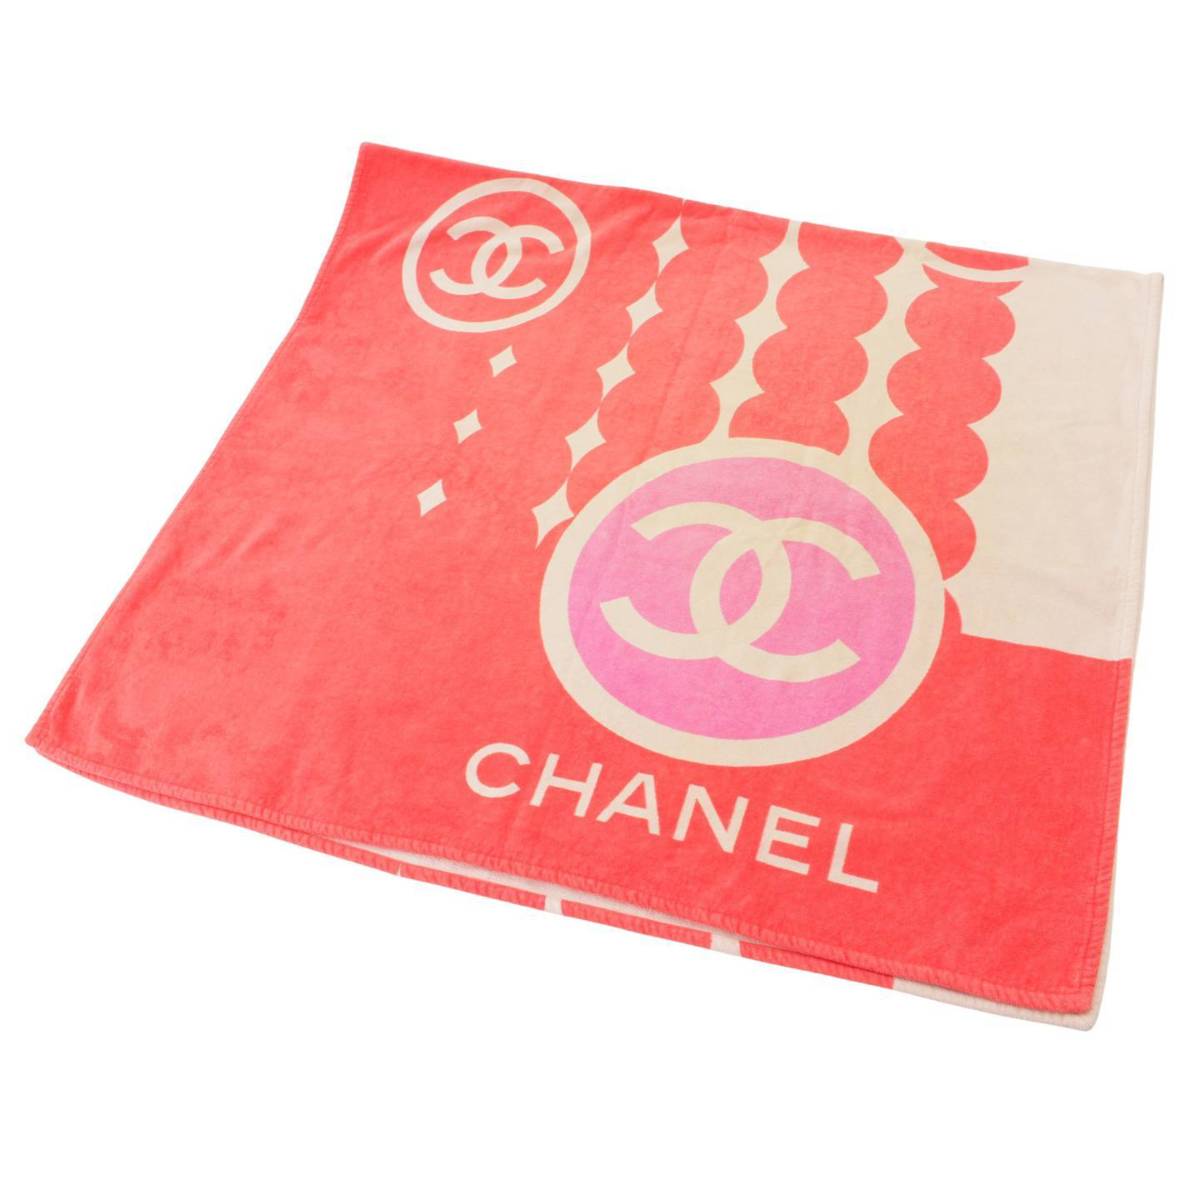 シャネル(Chanel) コットン ココマーク ビーチタオル ピンク